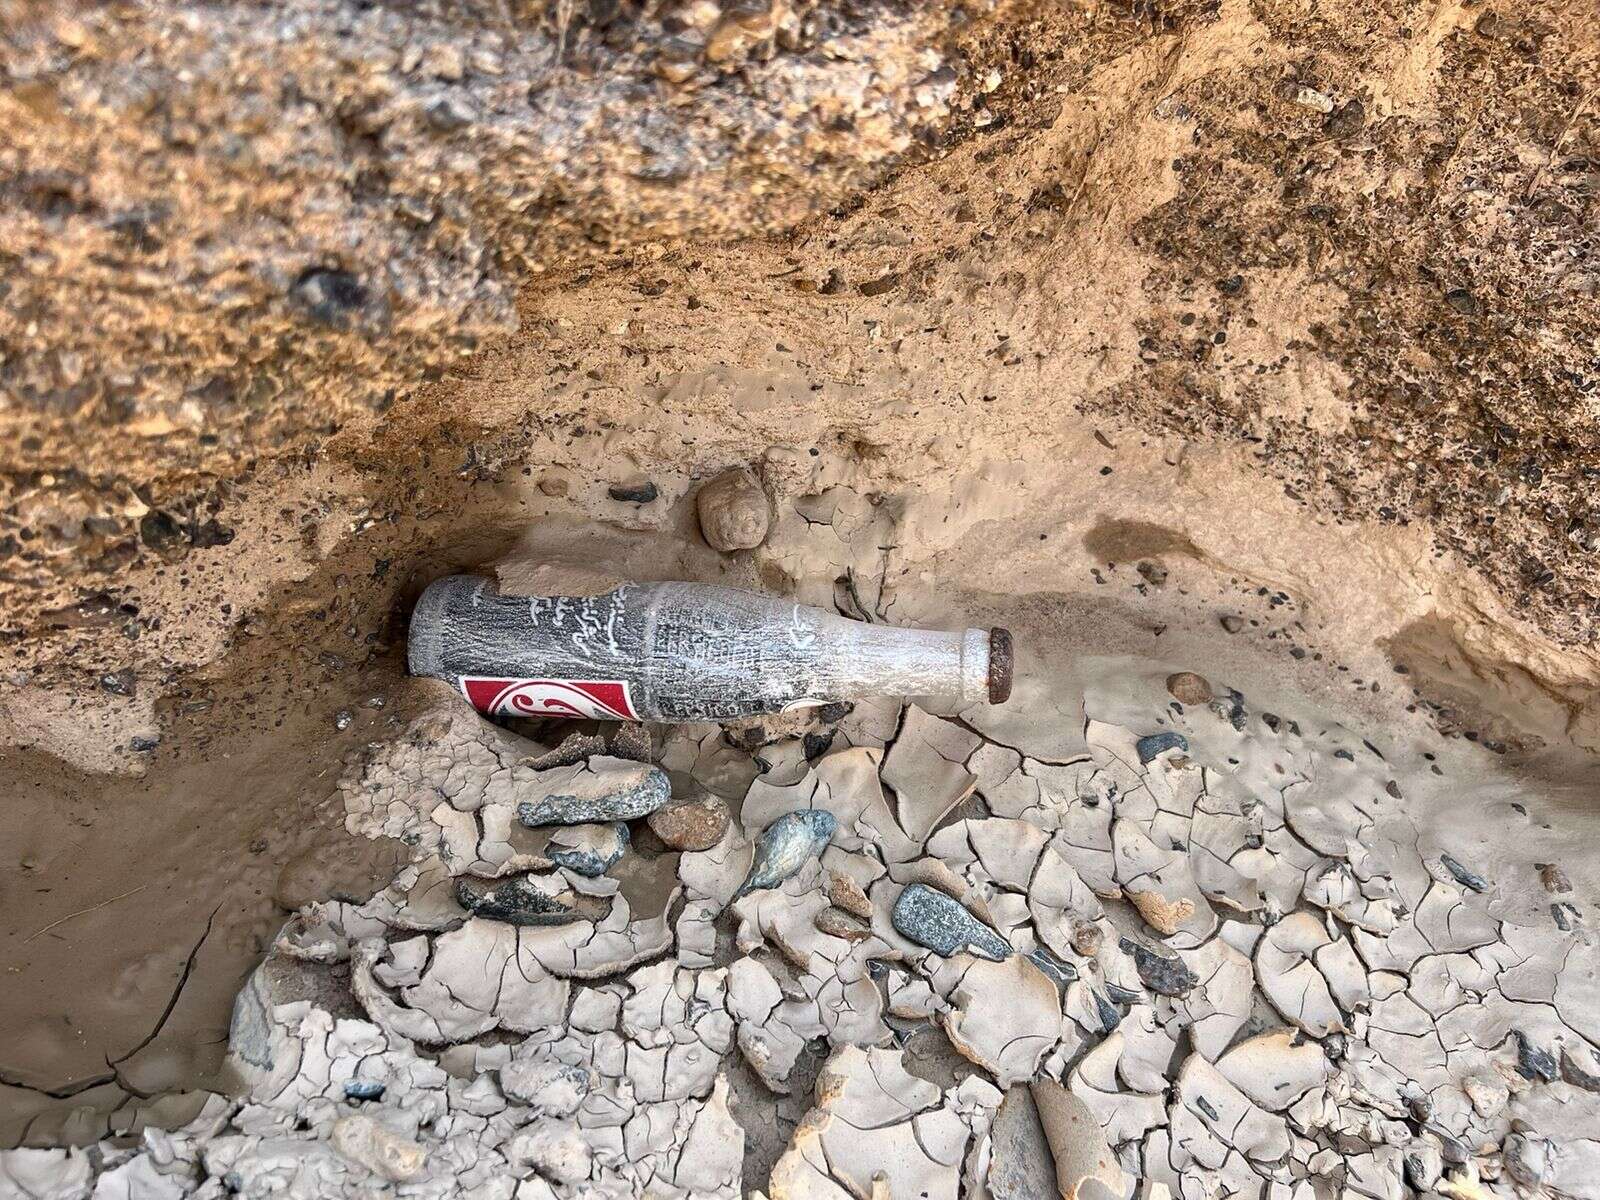 look: uae resident finds rare vintage soft drink bottle after recent rains